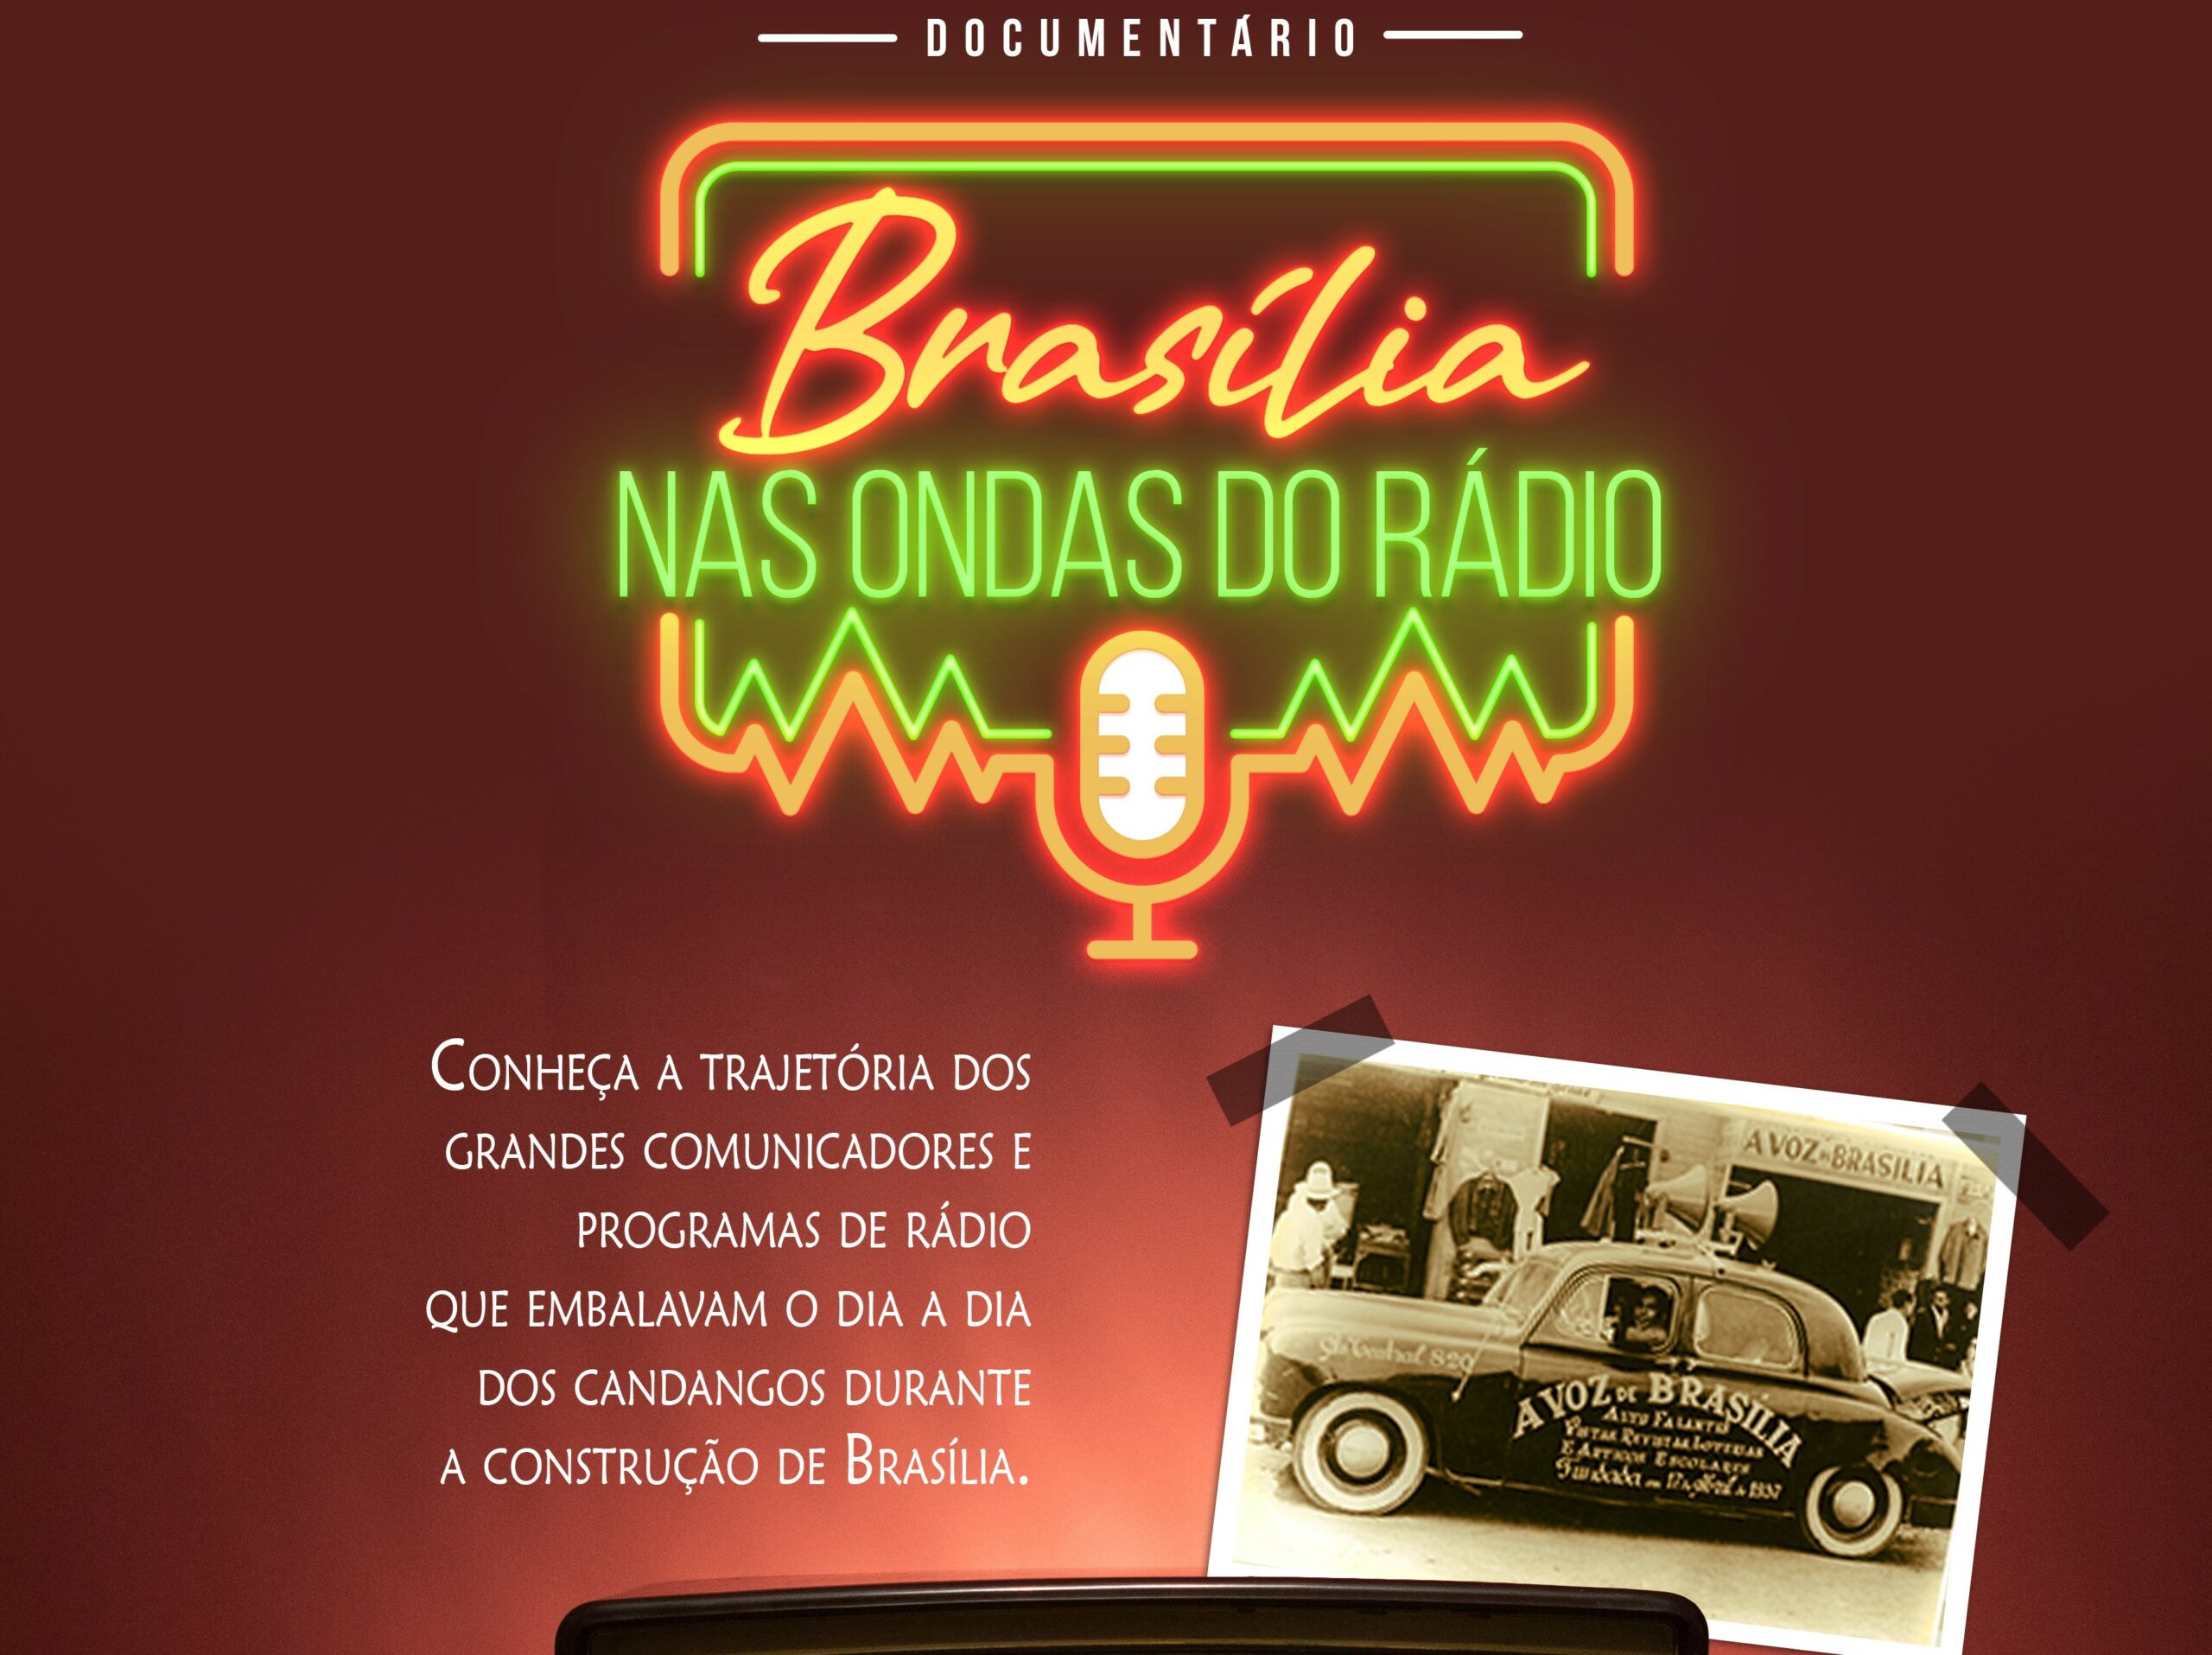 BRASÍLIA NAS ONDAS DO RÁDIO | Documentário que conta a história do rádio na capital federal será lançado nesta quinta (31)